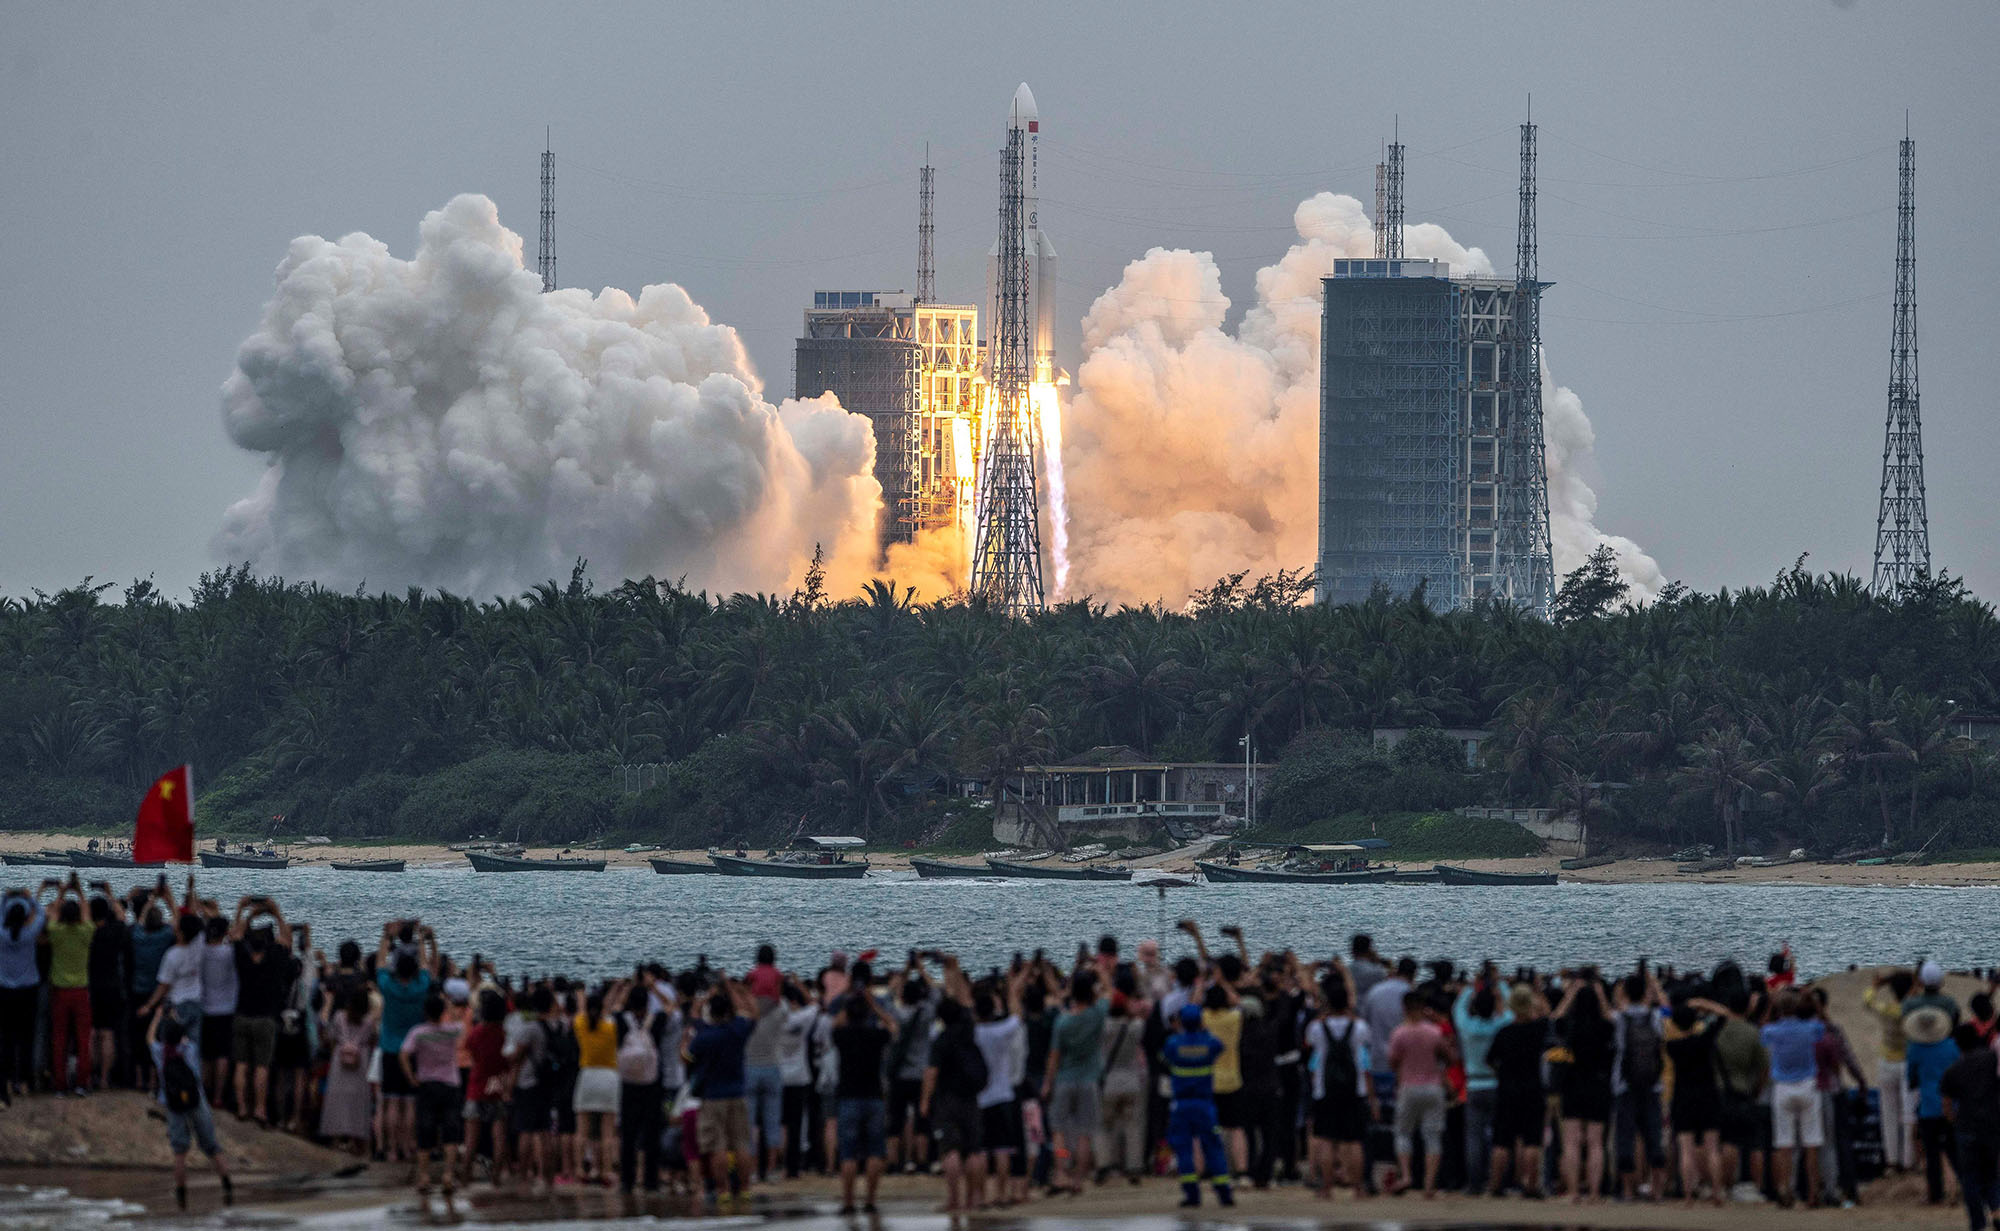 يشاهد الناس صاروخ Long March 5B ، الذي يحمل الوحدة الأساسية لمحطة Tianhe الفضائية الصينية ، وهو ينطلق من مركز Wenchang للإطلاق الفضائي في مقاطعة هاينان جنوب الصين في 29 أبريل 2021 (مصدر الصورة: STR / AFP / Getty) 